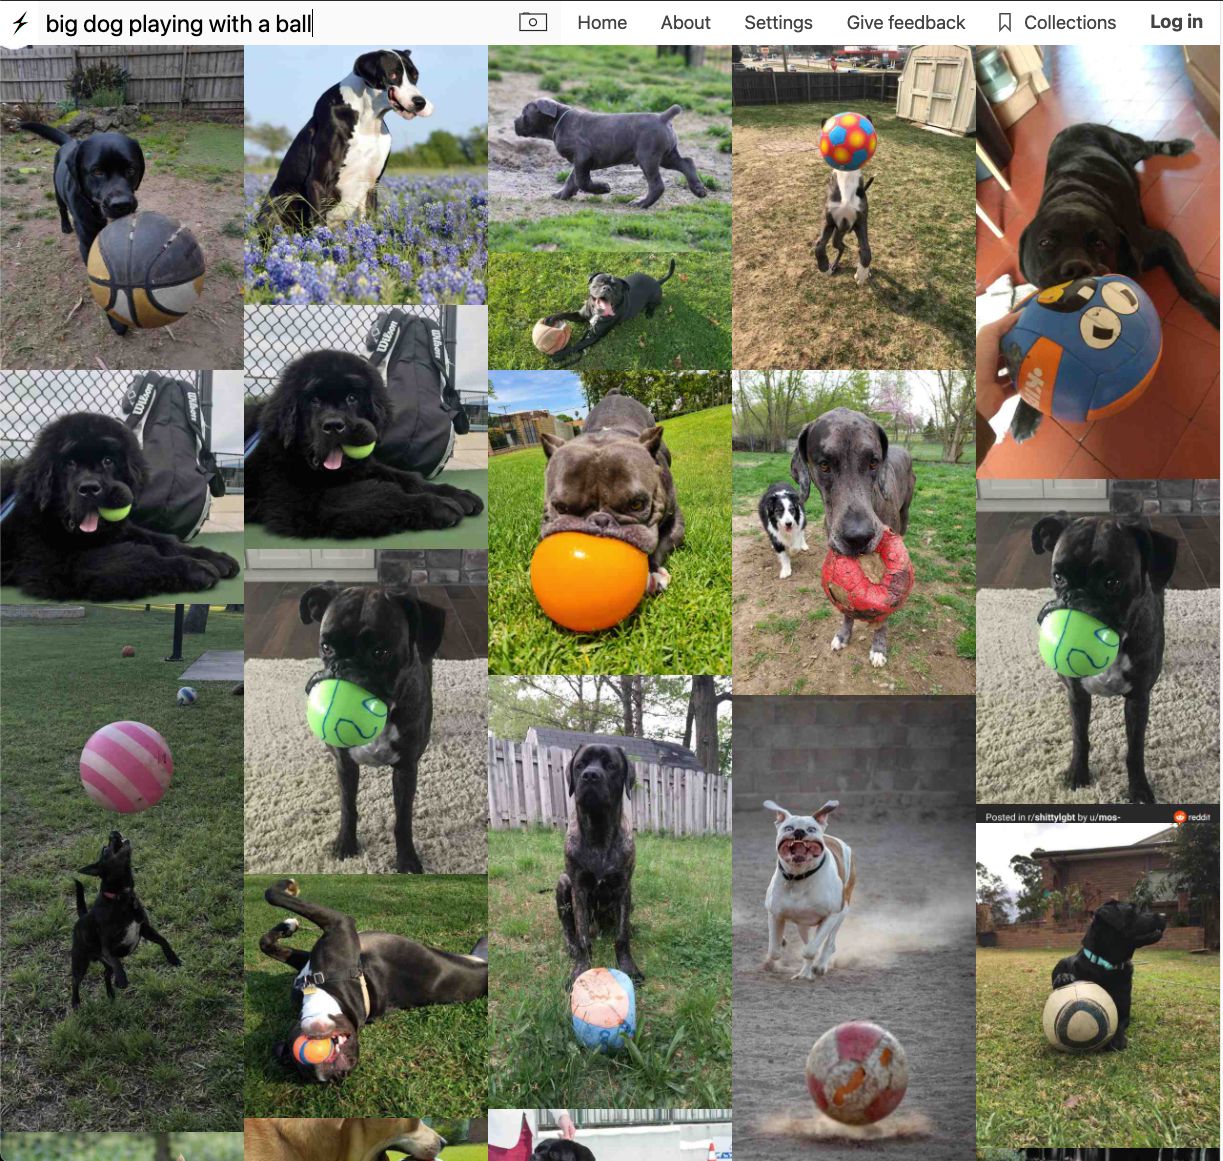 Rezultaty wyszukiwania dla frazy: "duży pies bawiący się piłką".